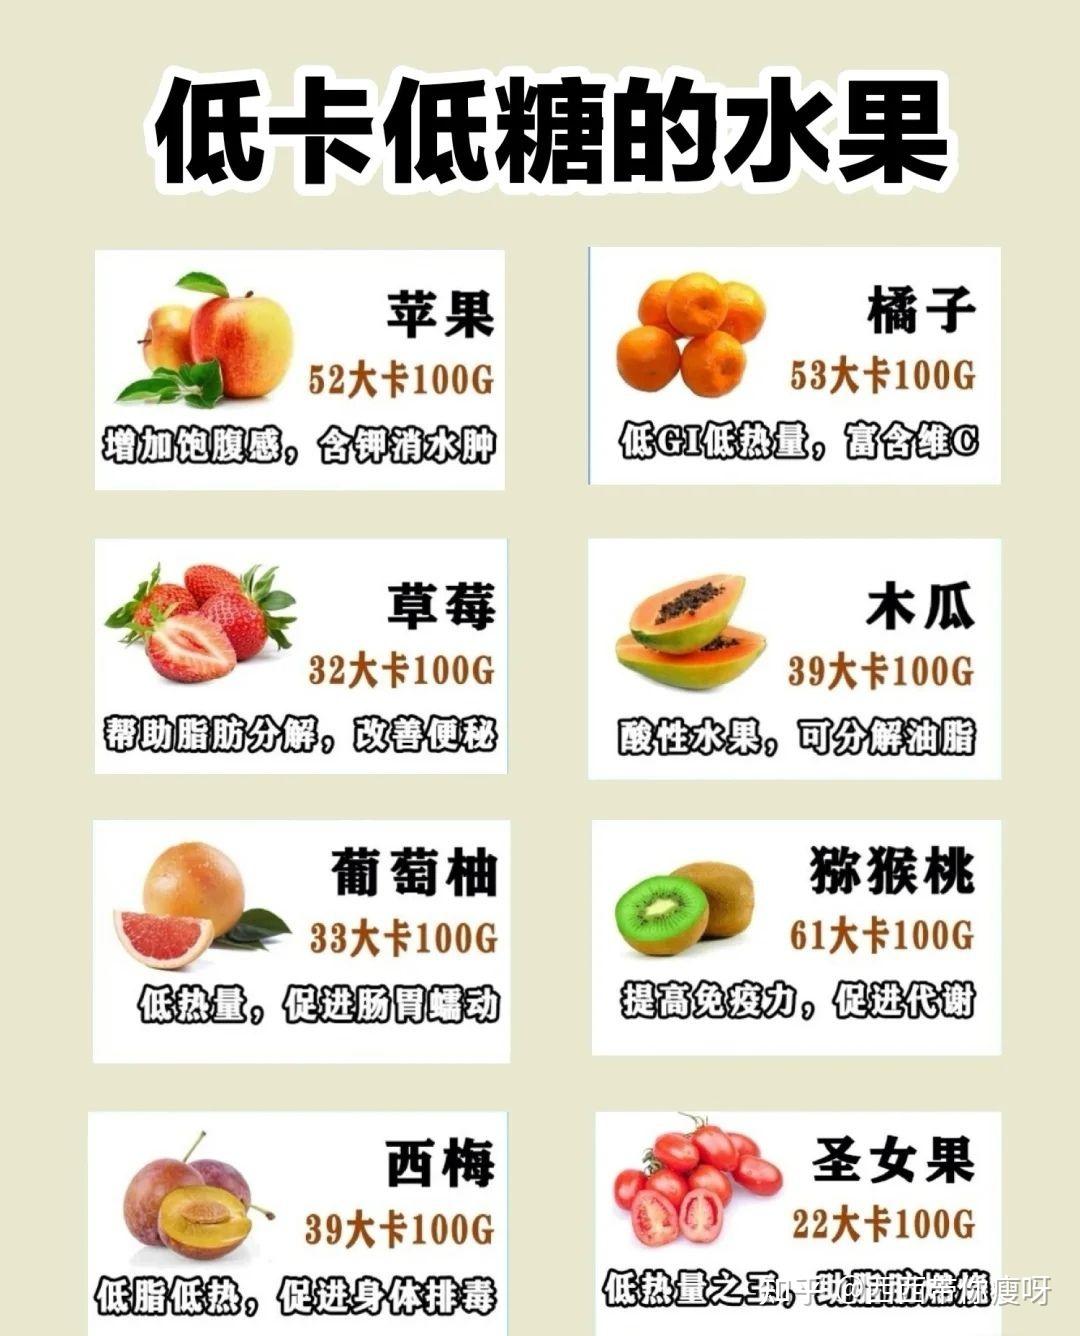 今天分享减肥期可以吃的水果呀(^o^)